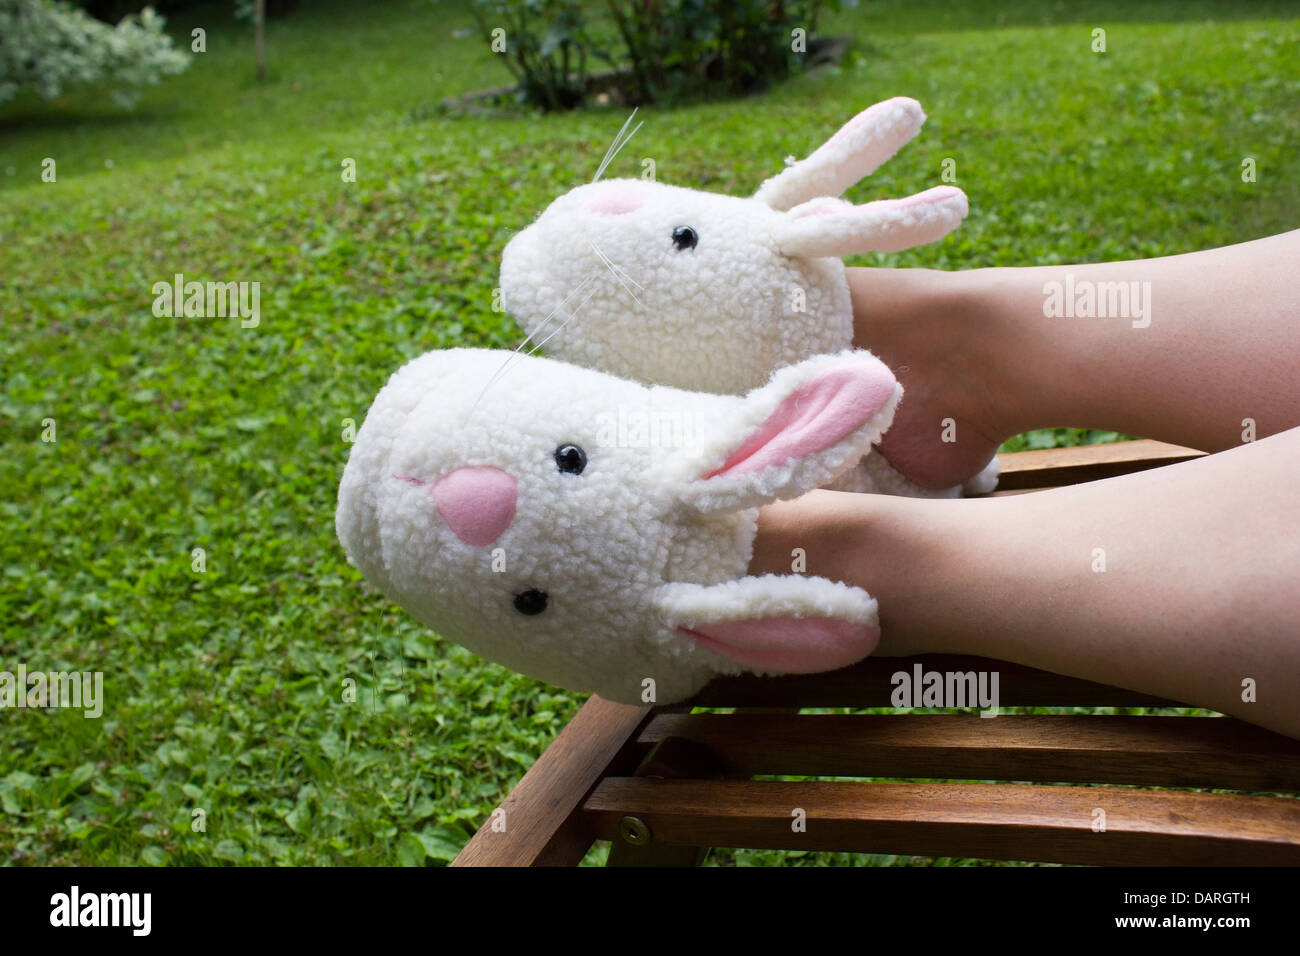 Häschen-Pantoffeln tragen - Stockfotografie: lizenzfreie Fotos © penywise  2133177